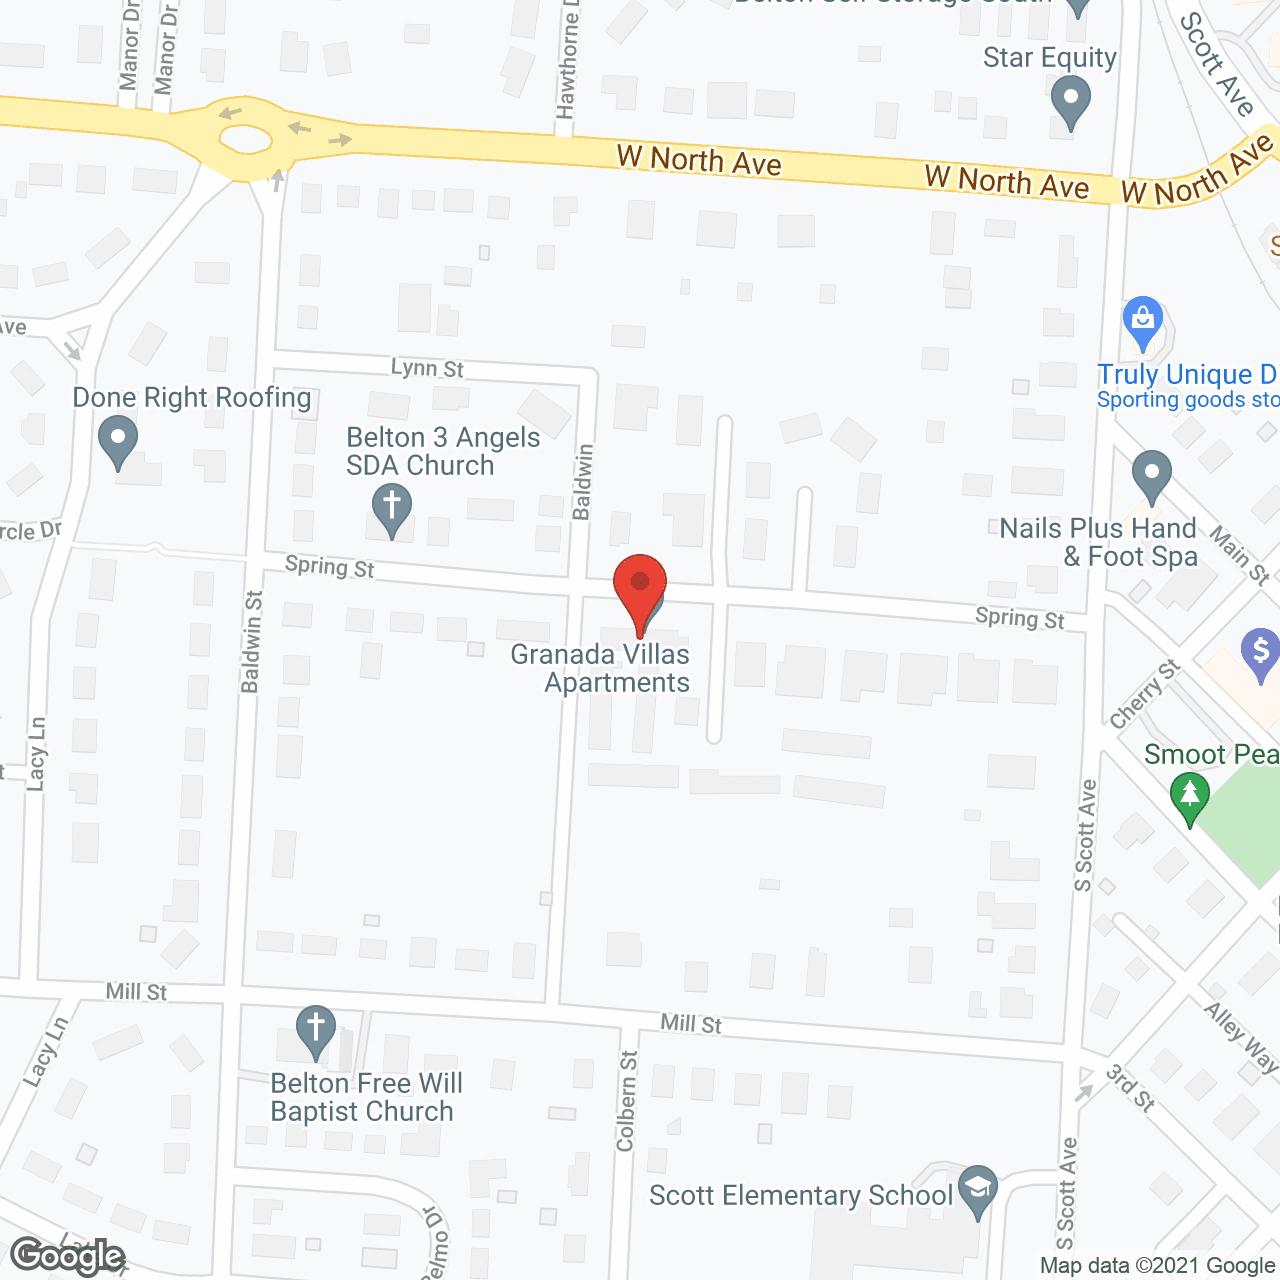 Granada Villas Apartments in google map